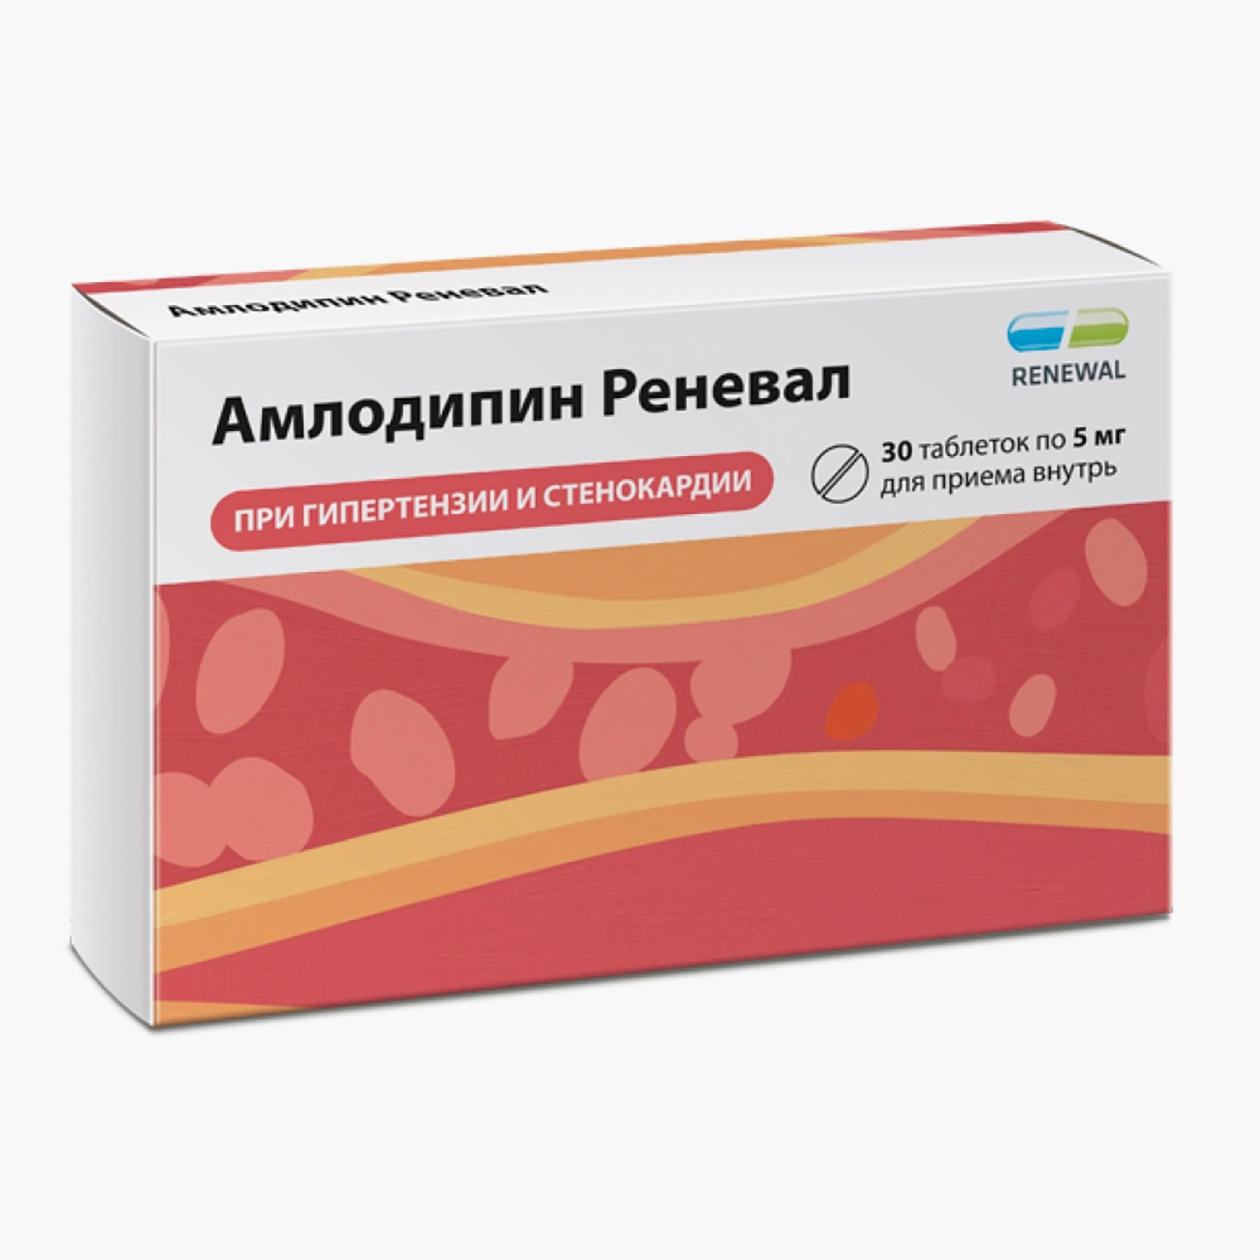 «Амлодипин Реневал», 5 мг. Аналог по действующему веществу стоит в 13 раз дешевле оригинала